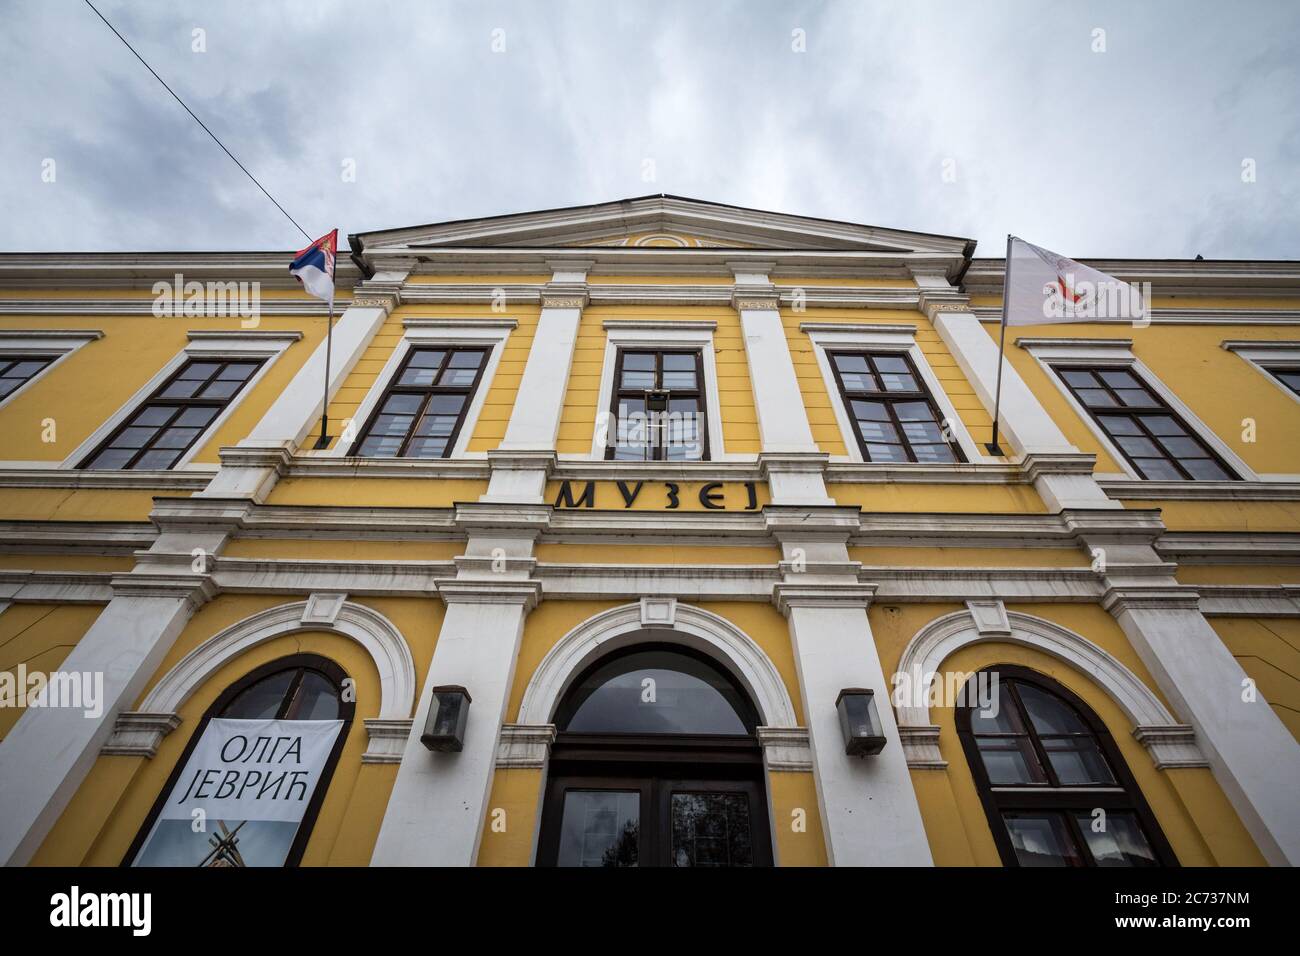 KRALJEVO, SERBIEN - 10. NOVEMBER 2019: Hauptfassade des Nationalmuseums von Kralevo, auch narodni muzej genannt, ein kulturelles Wahrzeichen der Stadt, promo Stockfoto